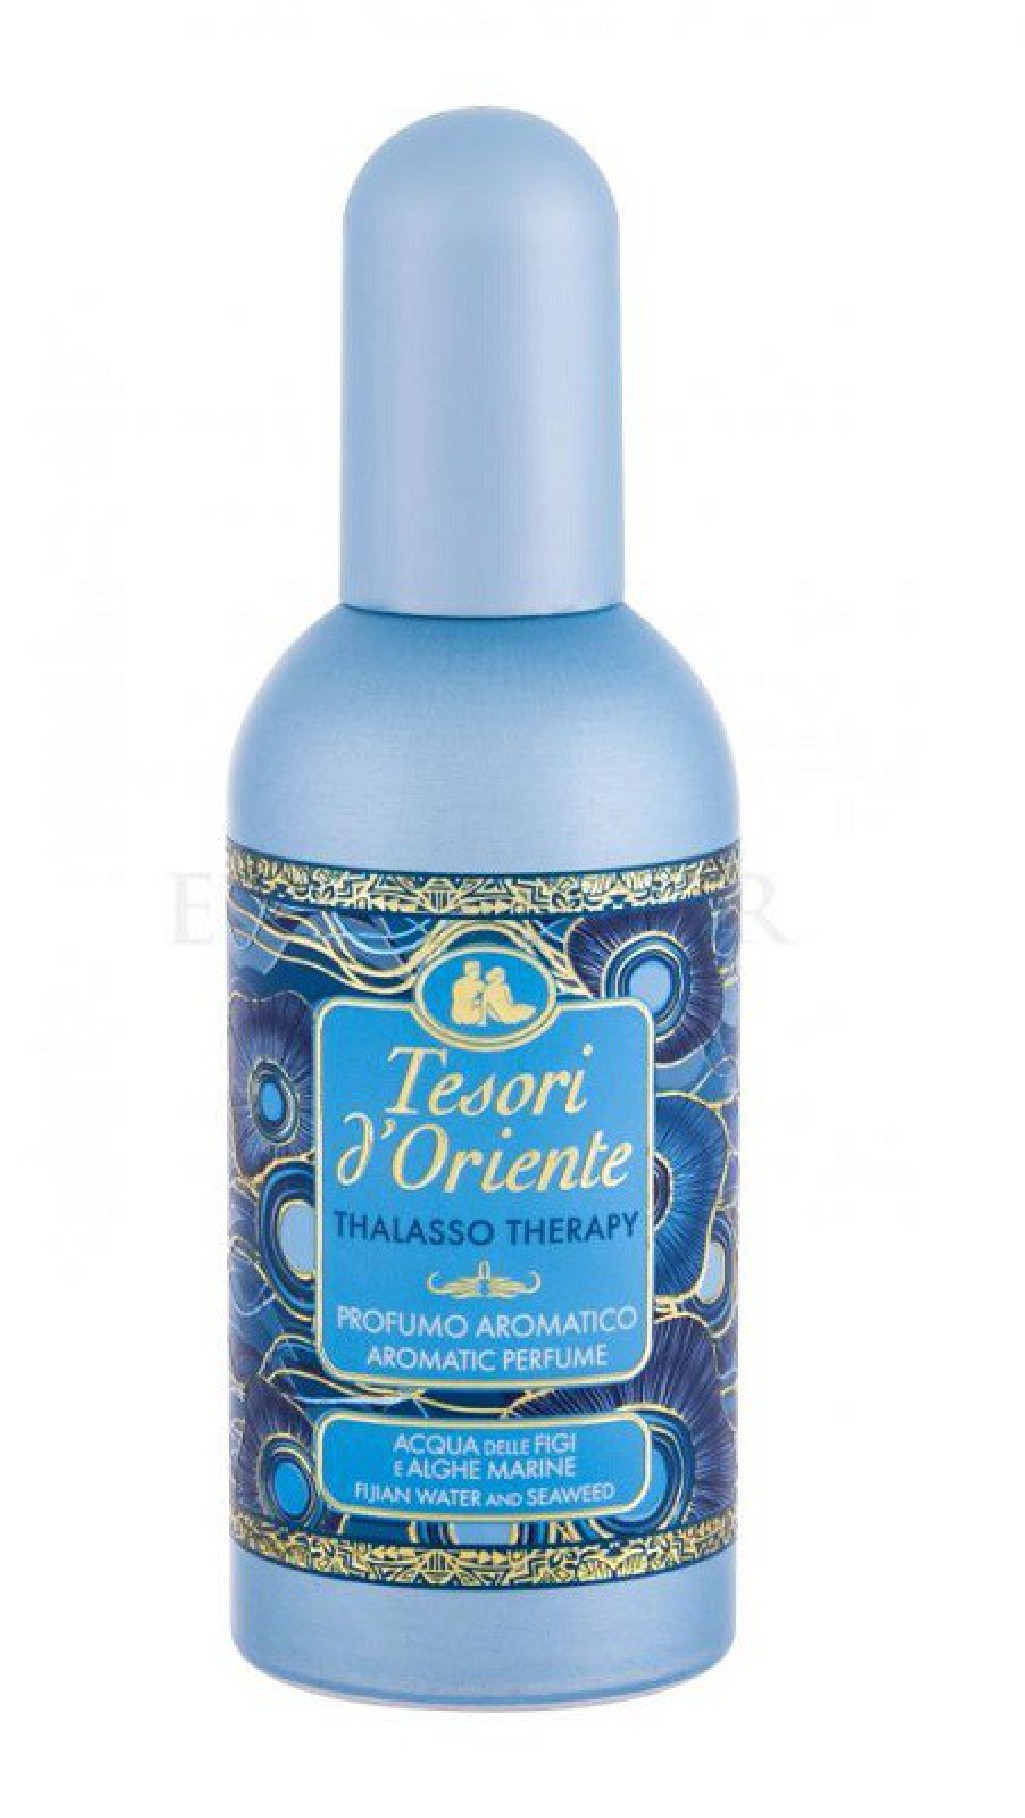 Tesori d'Oriente Perfumy Thalasso Therapy 100 ml